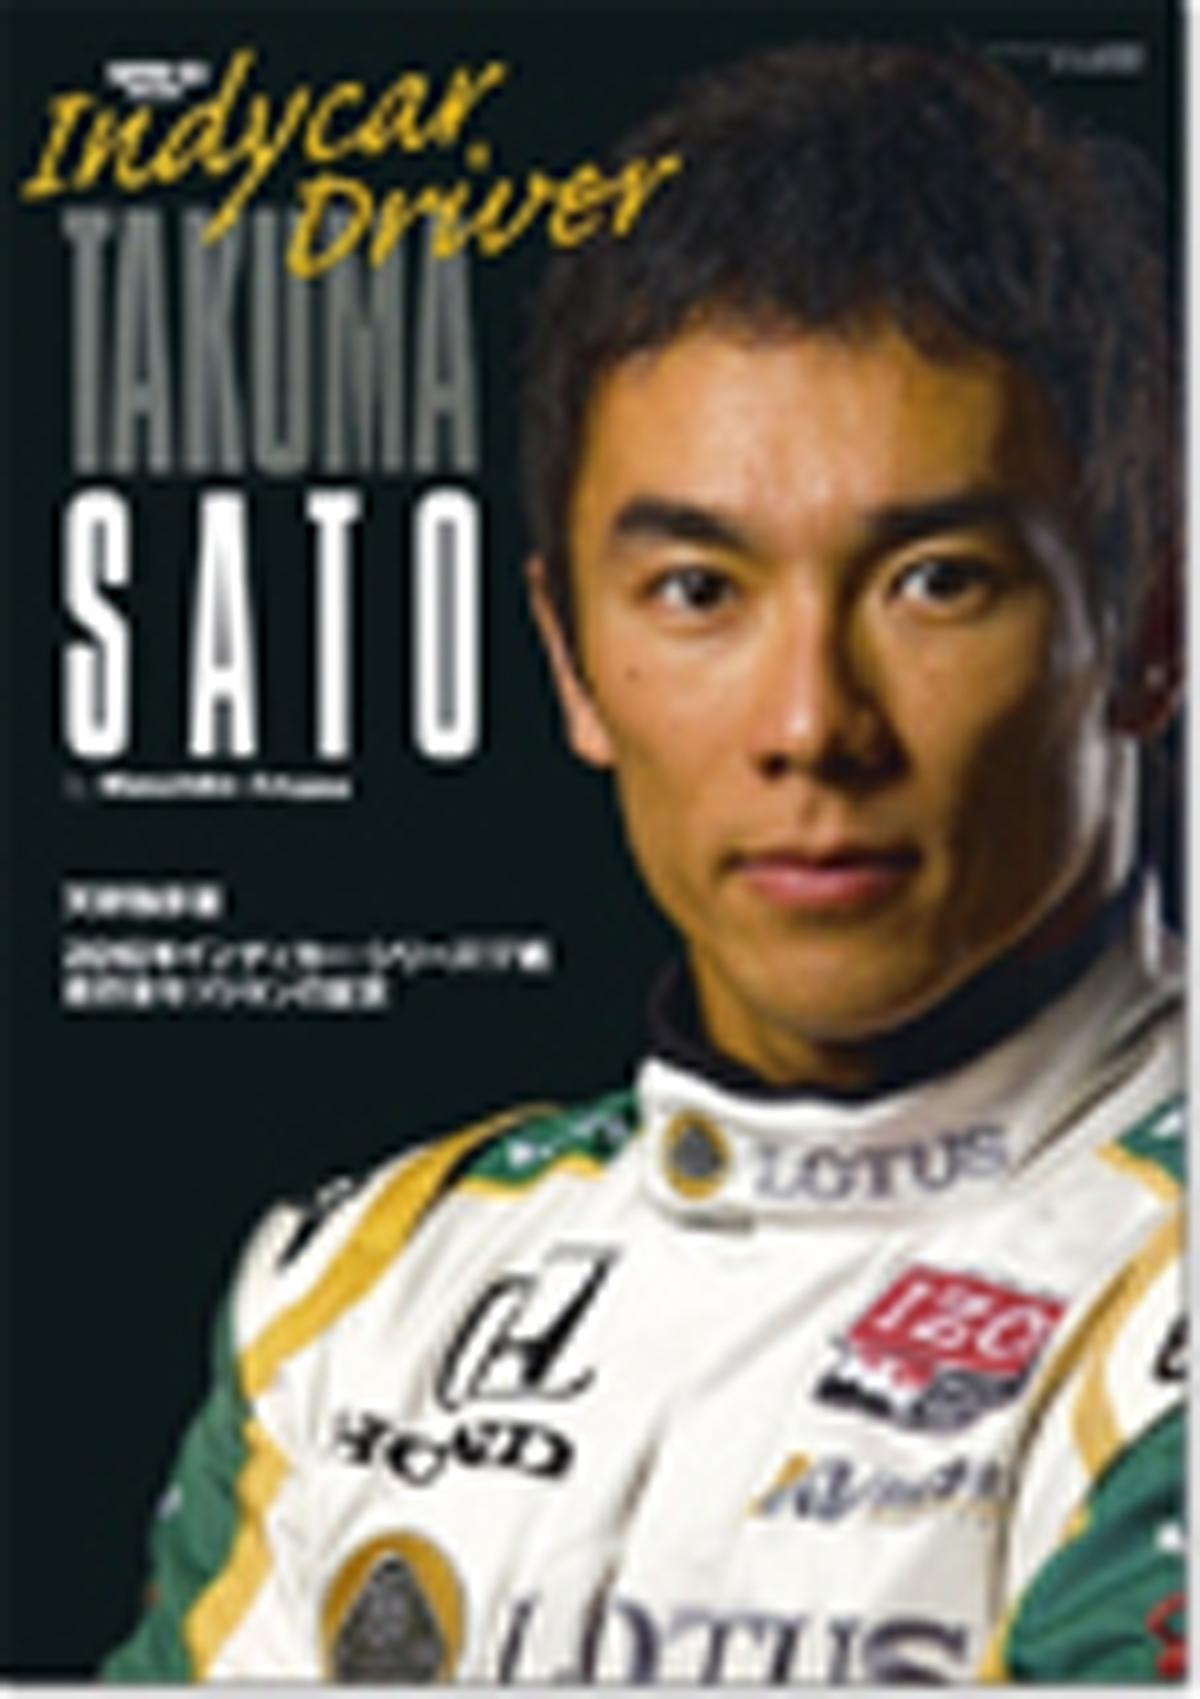 インディカードライバー佐藤琢磨 2010年インディカー・シリーズ17戦 走行全セッションの証言